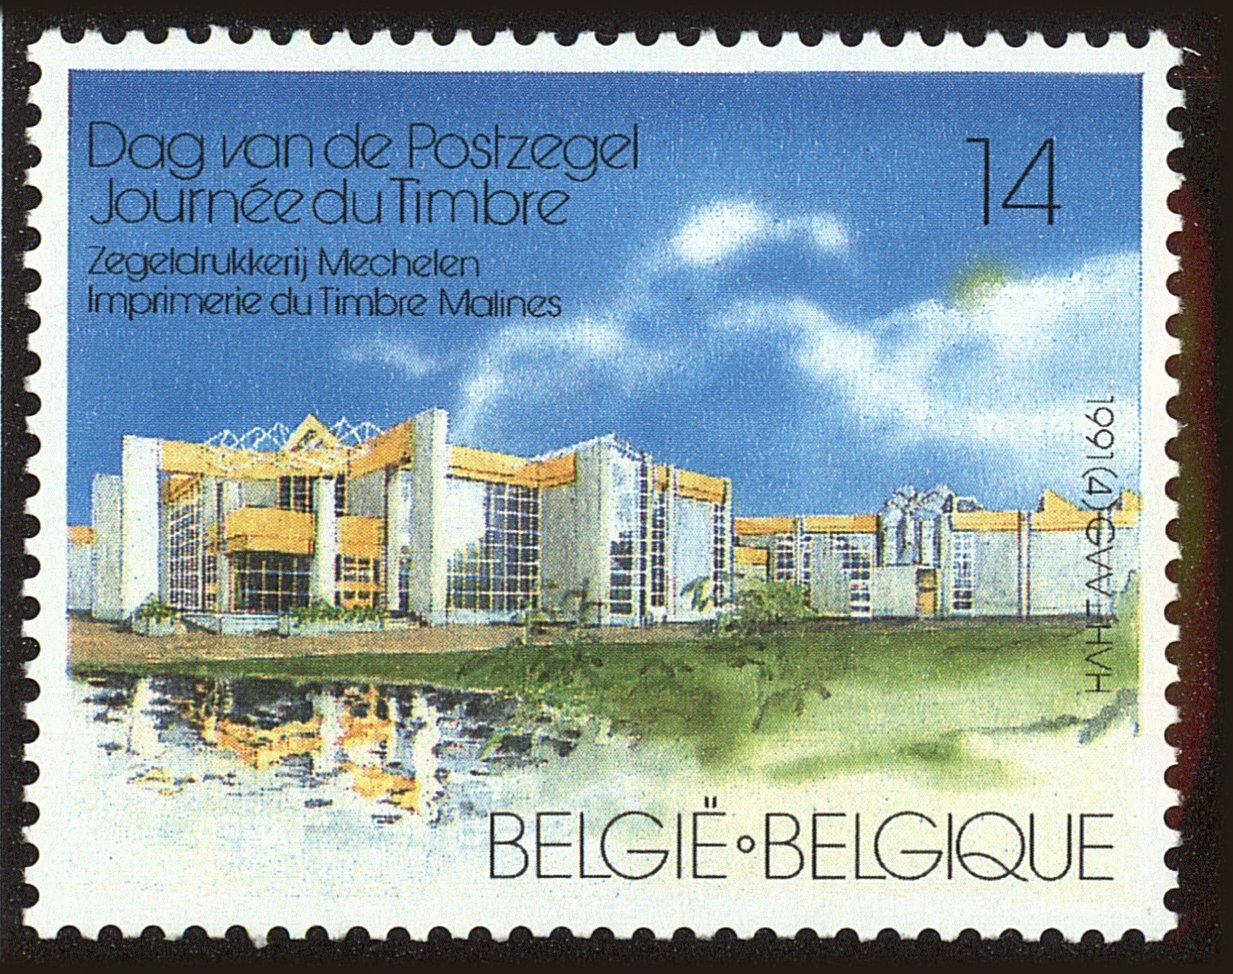 Front view of Belgium 1397 collectors stamp